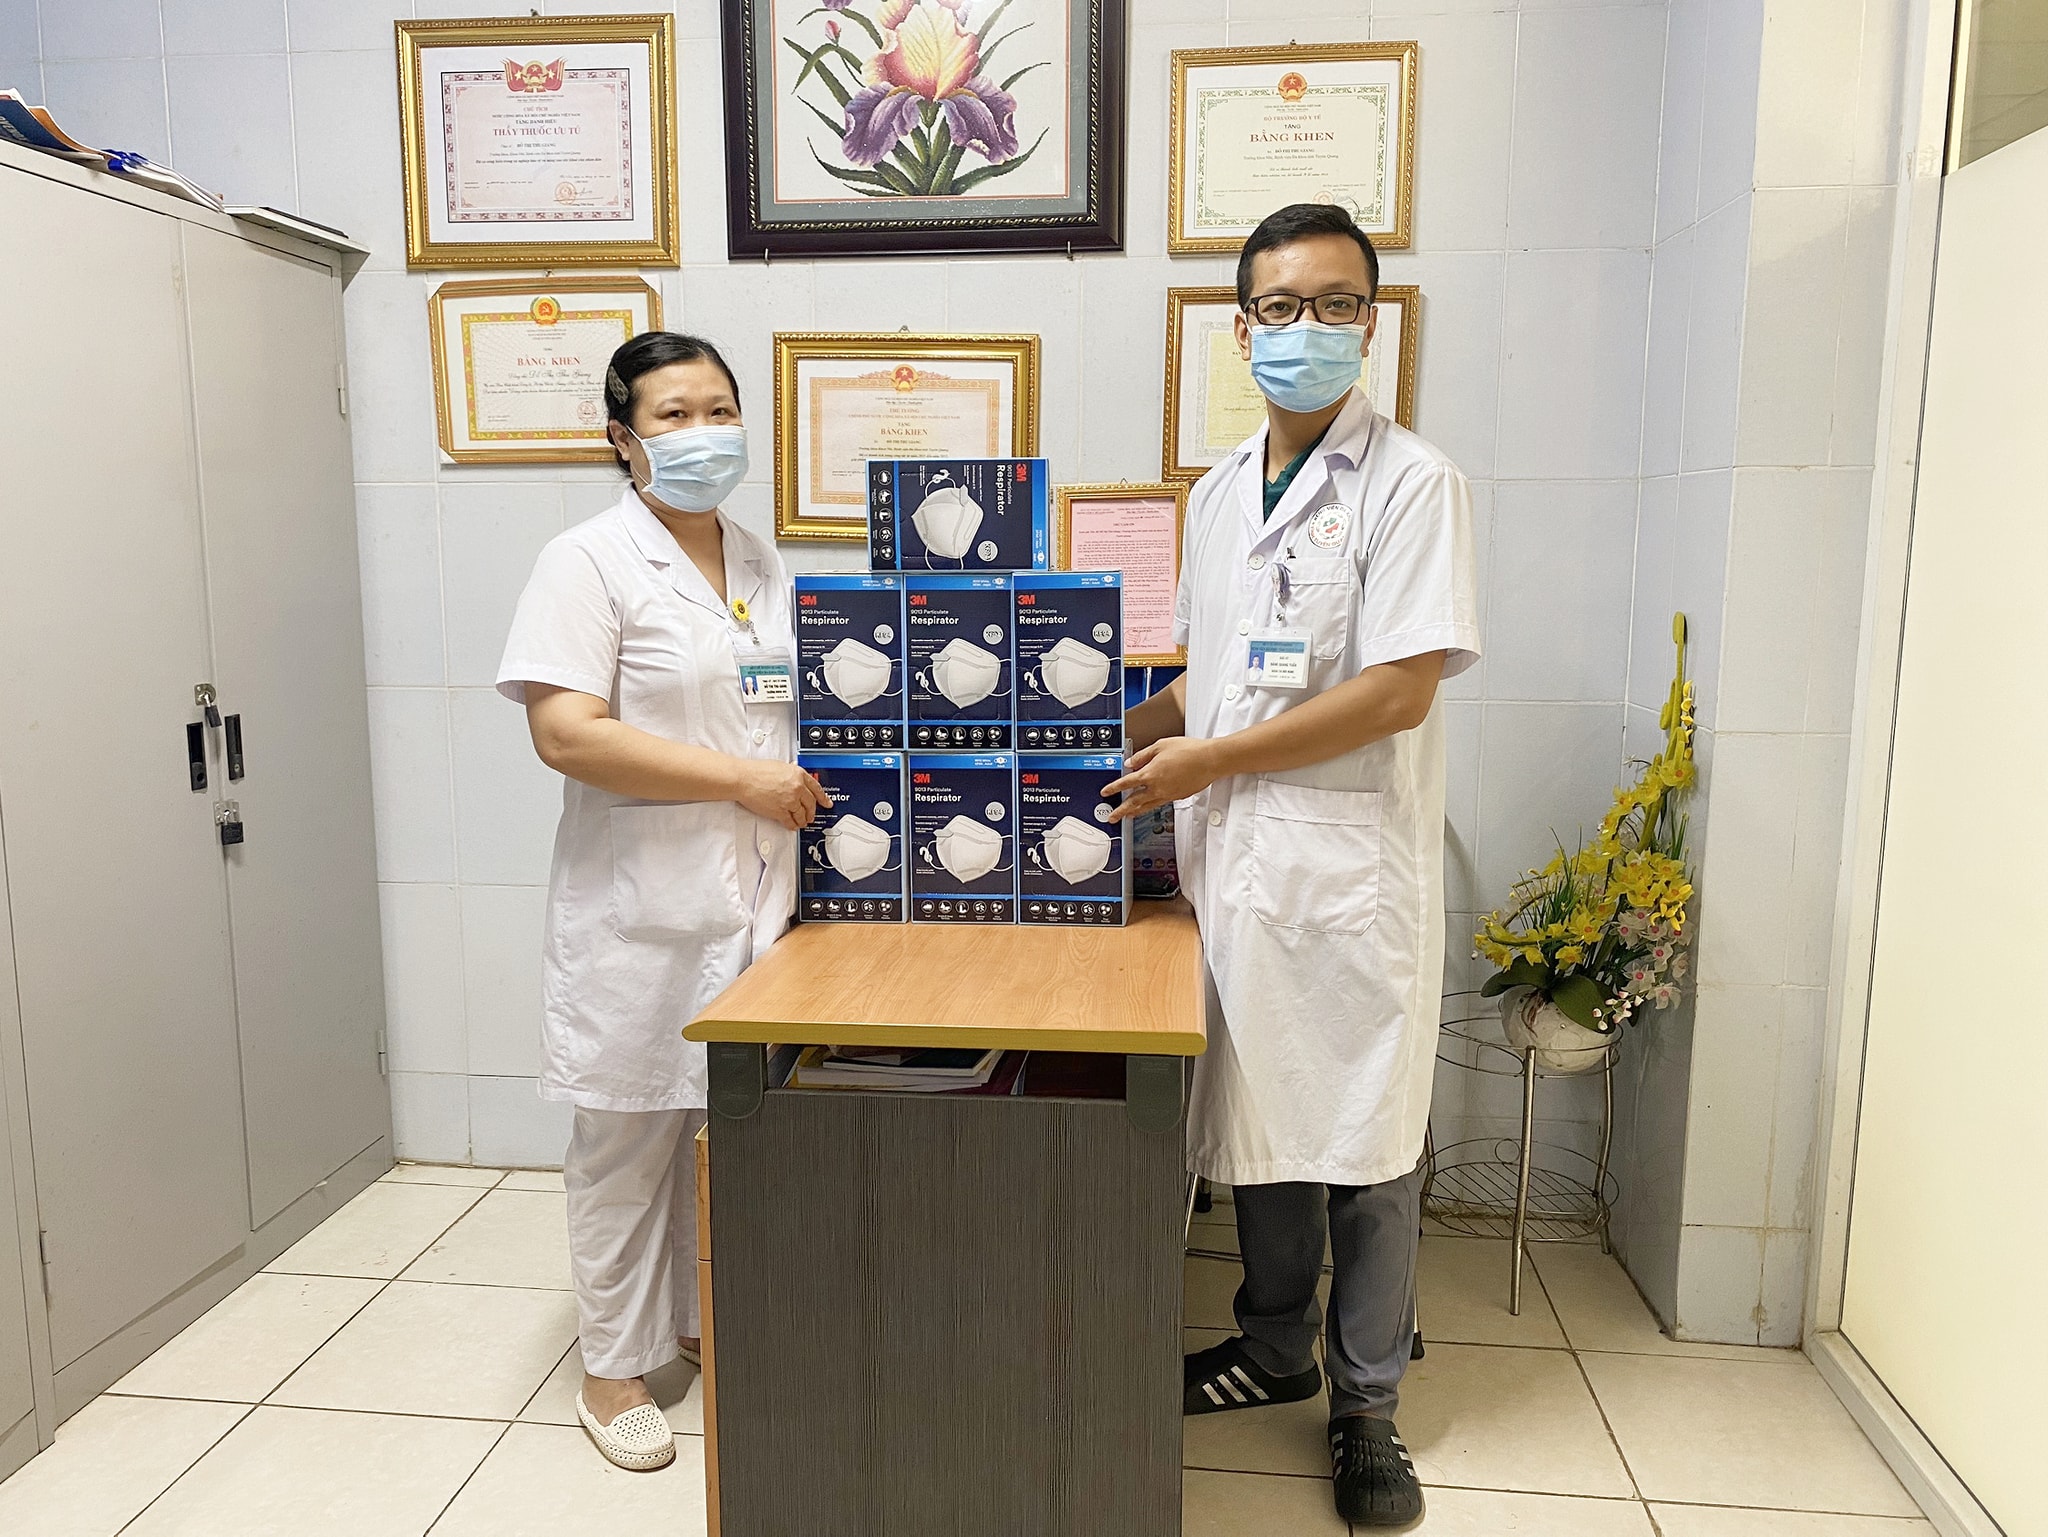 Xin trân trọng cảm ơn Thạc sỹ Bác sỹ Đỗ Thị Thu Giang - Trưởng khoa Nhi, Bệnh viện Đa Khoa tỉnh Tuyên Quang đã ủng hộ cho các cán bộ y tế của Bệnh viện đi tăng cường hỗ trợ phòng chống dịch Covid-19 tại TP.HCM (đợt 2) mỗi người 1 hộp khẩu trang 3M.